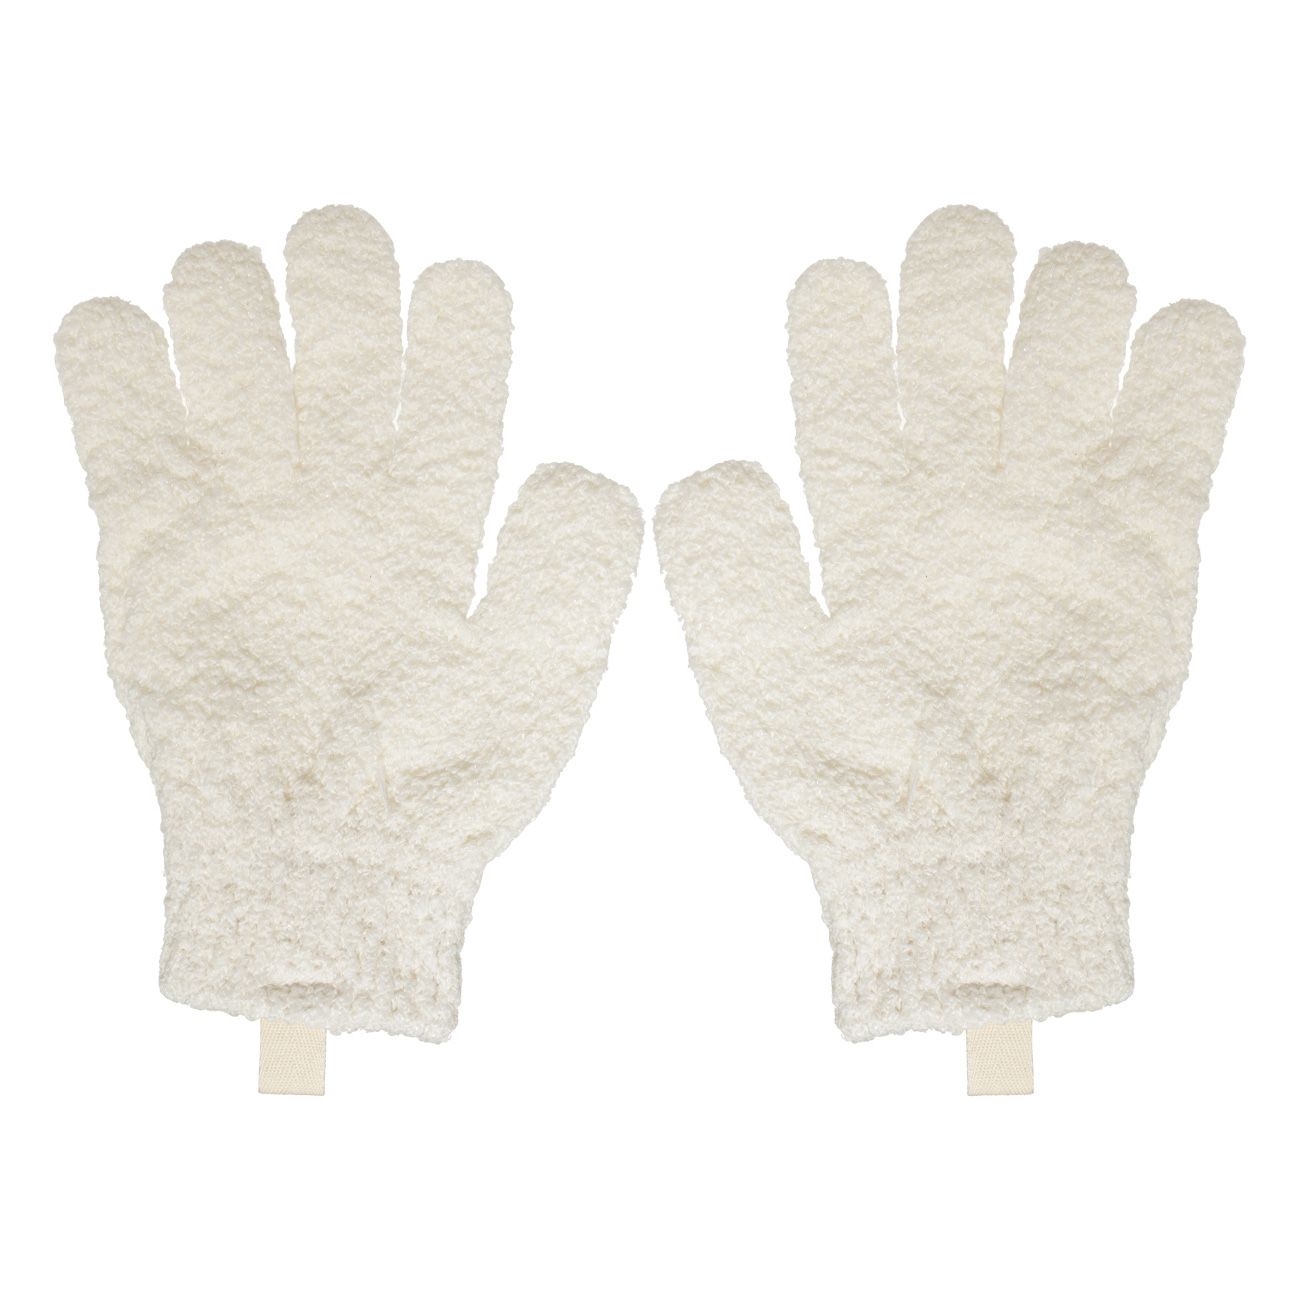 Перчатка для мытья тела Kuchenland отшелушивающая, полиэстер, молочная, 21 см, 2 шт белая перчатка